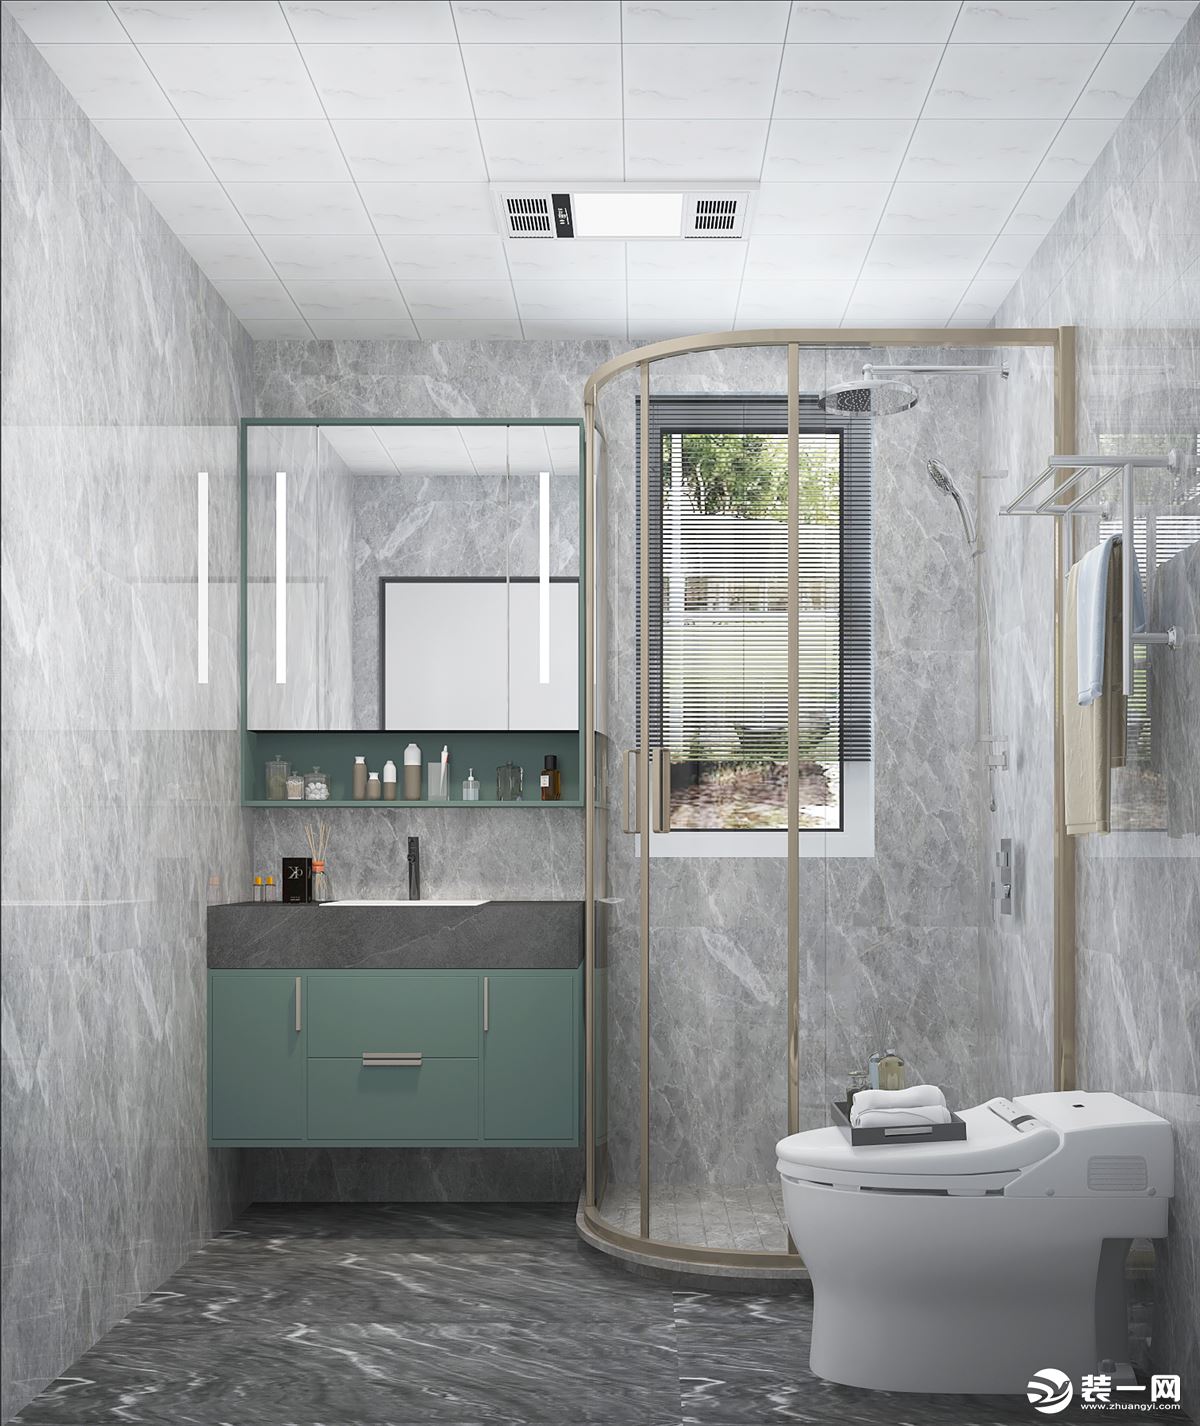 卫生间干湿分离的设计方便使用，金属与石材，打造干练时尚的现代空间感。